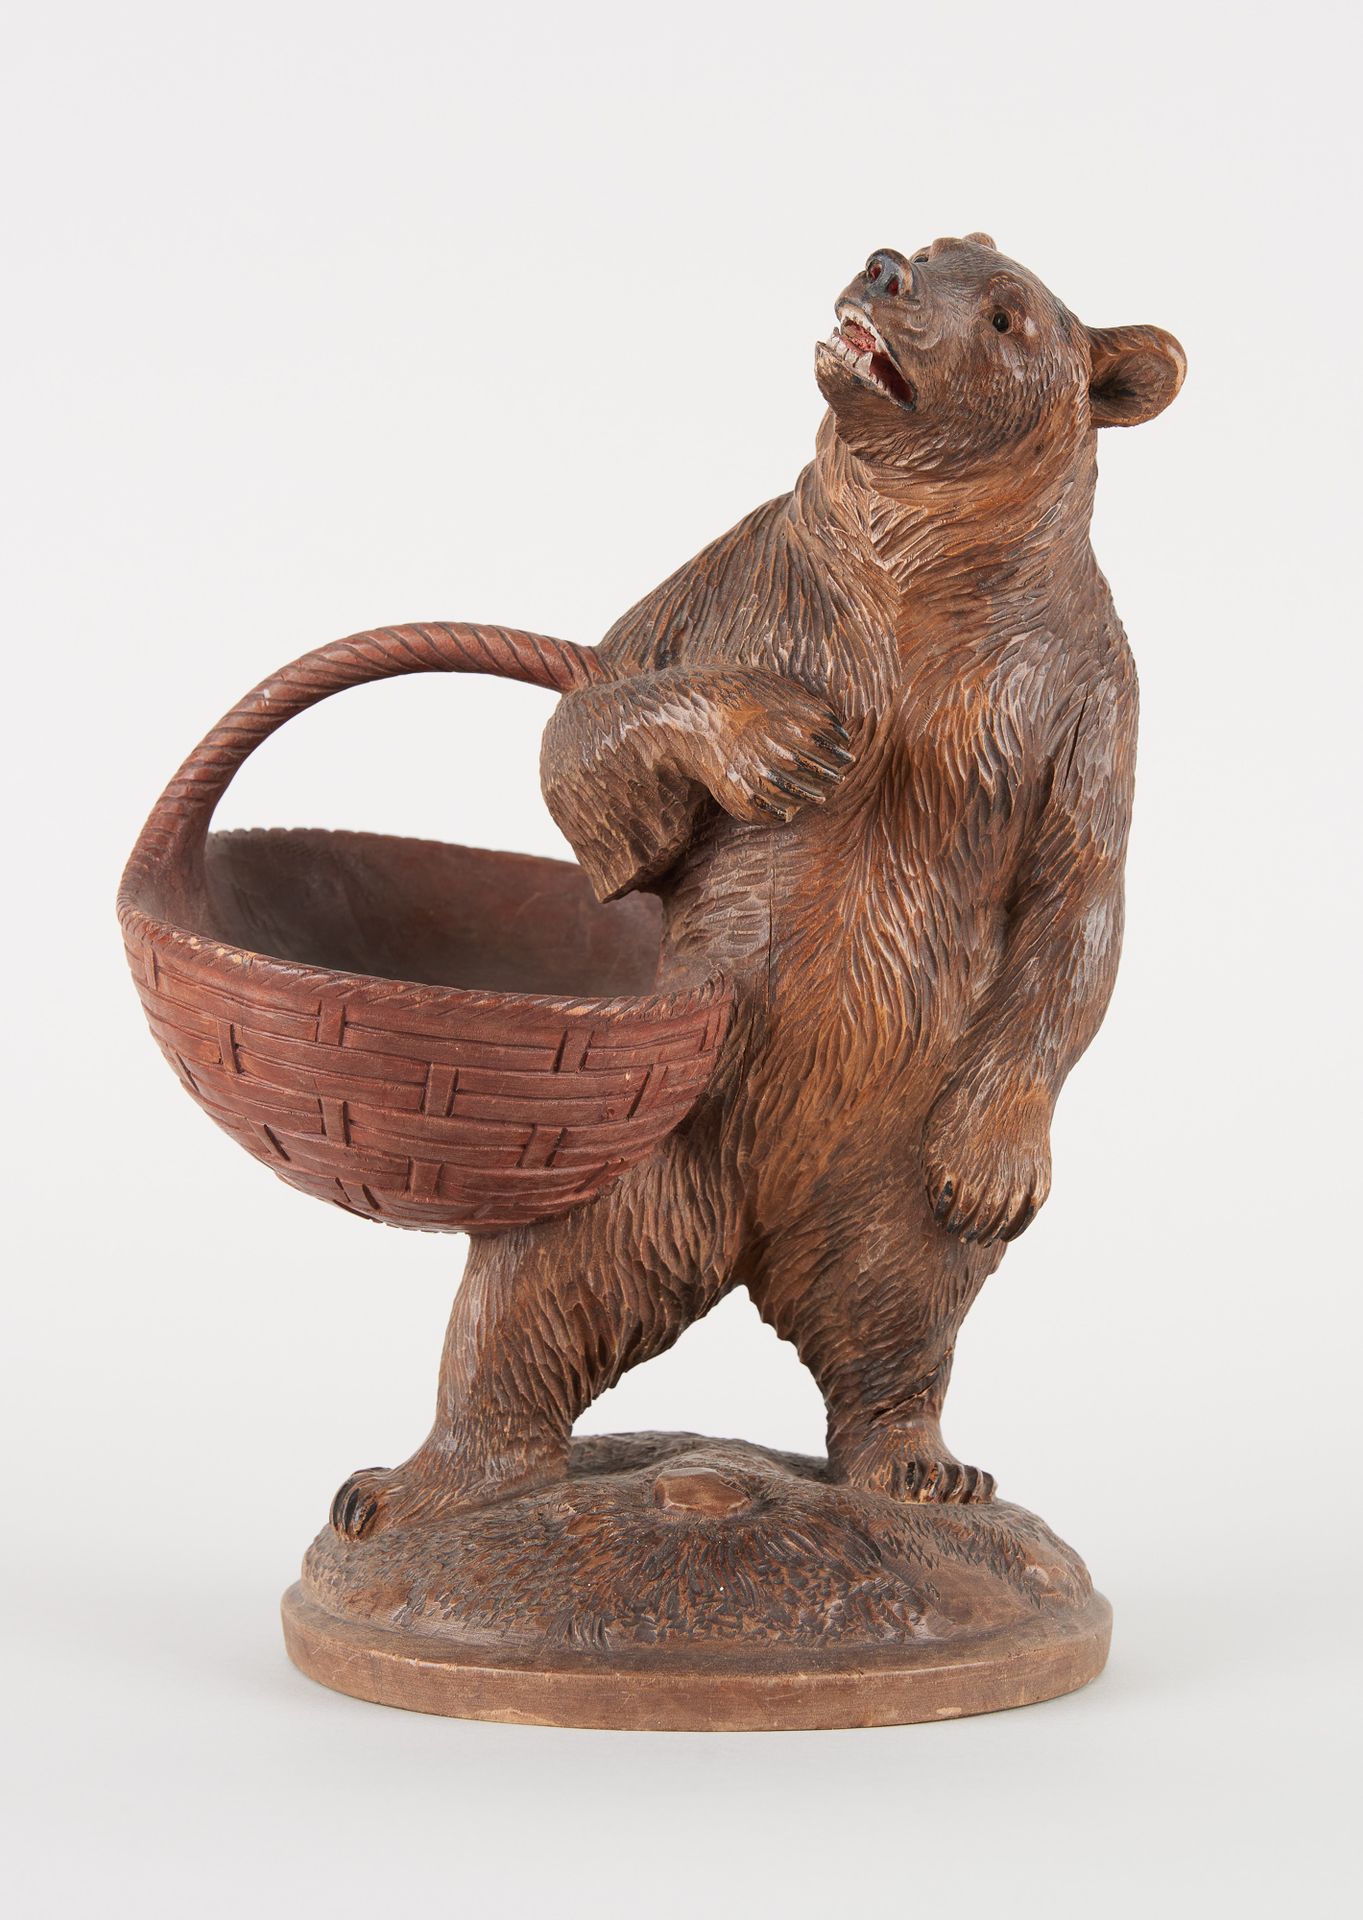 Travail de la Forêt Noire. Sculpture in natural wood: Bear carrying a basket.

S&hellip;